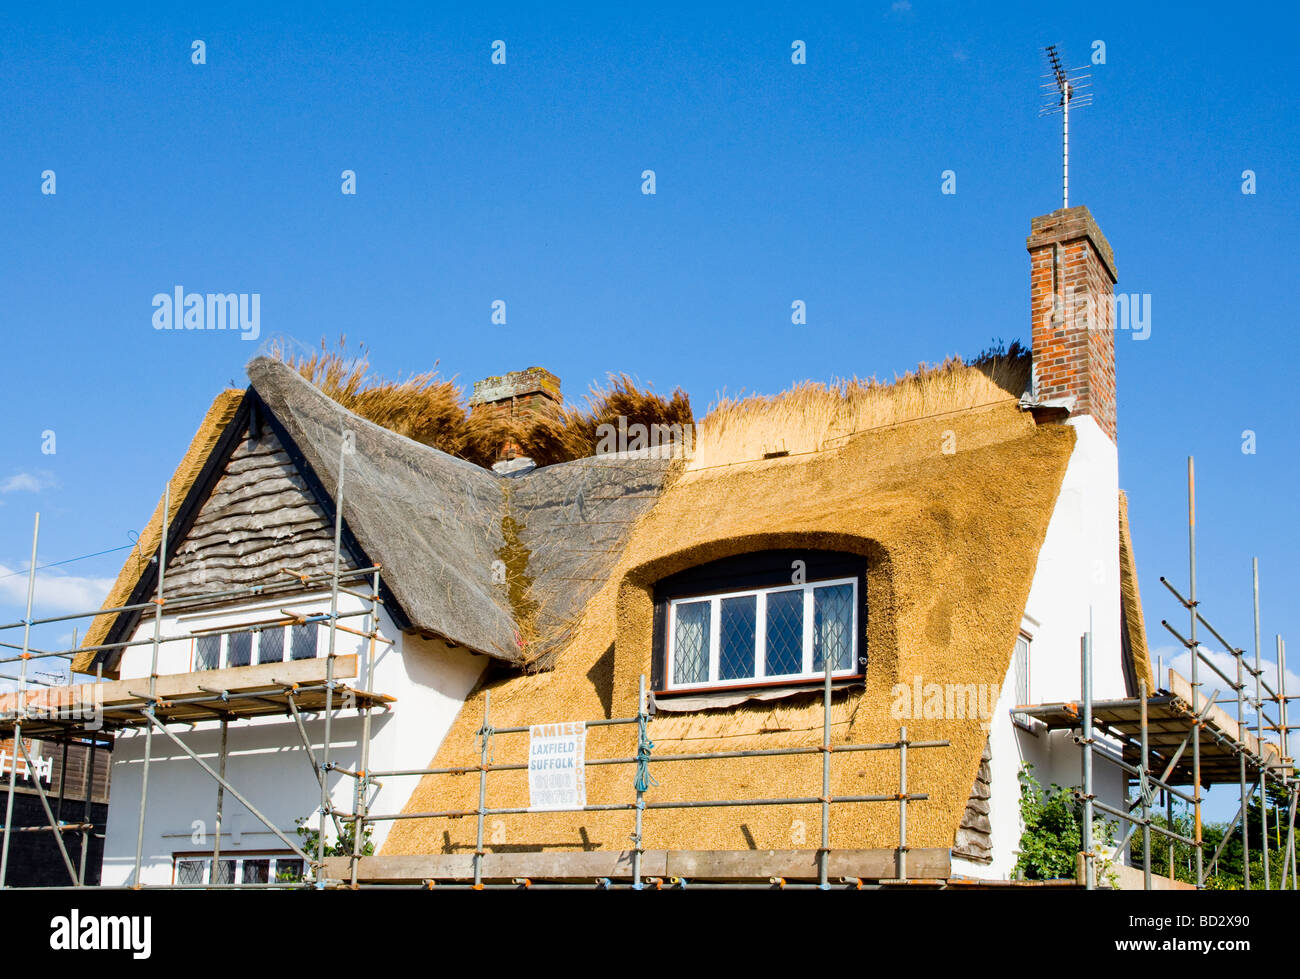 Vieux toit de chaume en voie d'être remplacés par de nouveaux chaumes sur un chalet à Walberswick, Suffolk, Angleterre Banque D'Images